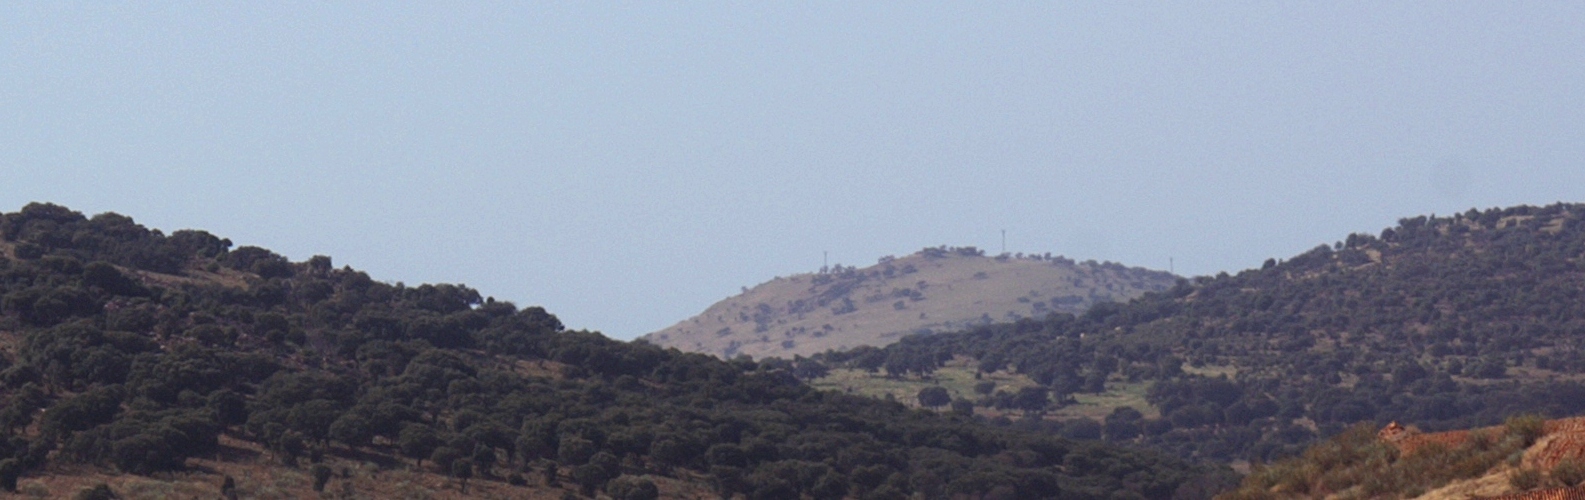 Volcán Cerro Pelado